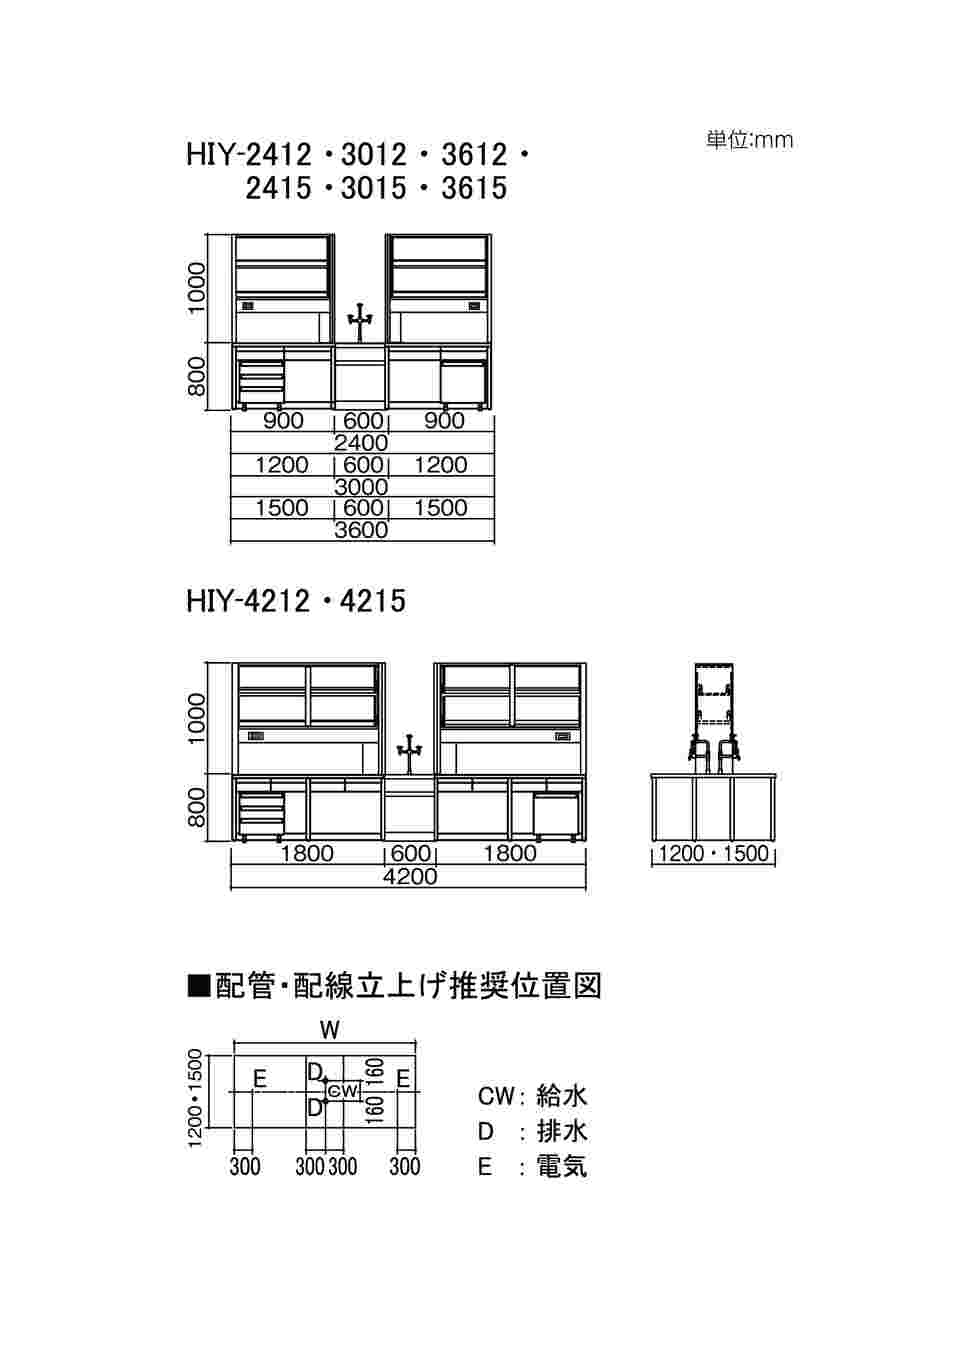 アズワン3-7765-03中央実験台木製タイプSAO-3012(3000×1200×800mm)(as1-3-7765-03) - 2